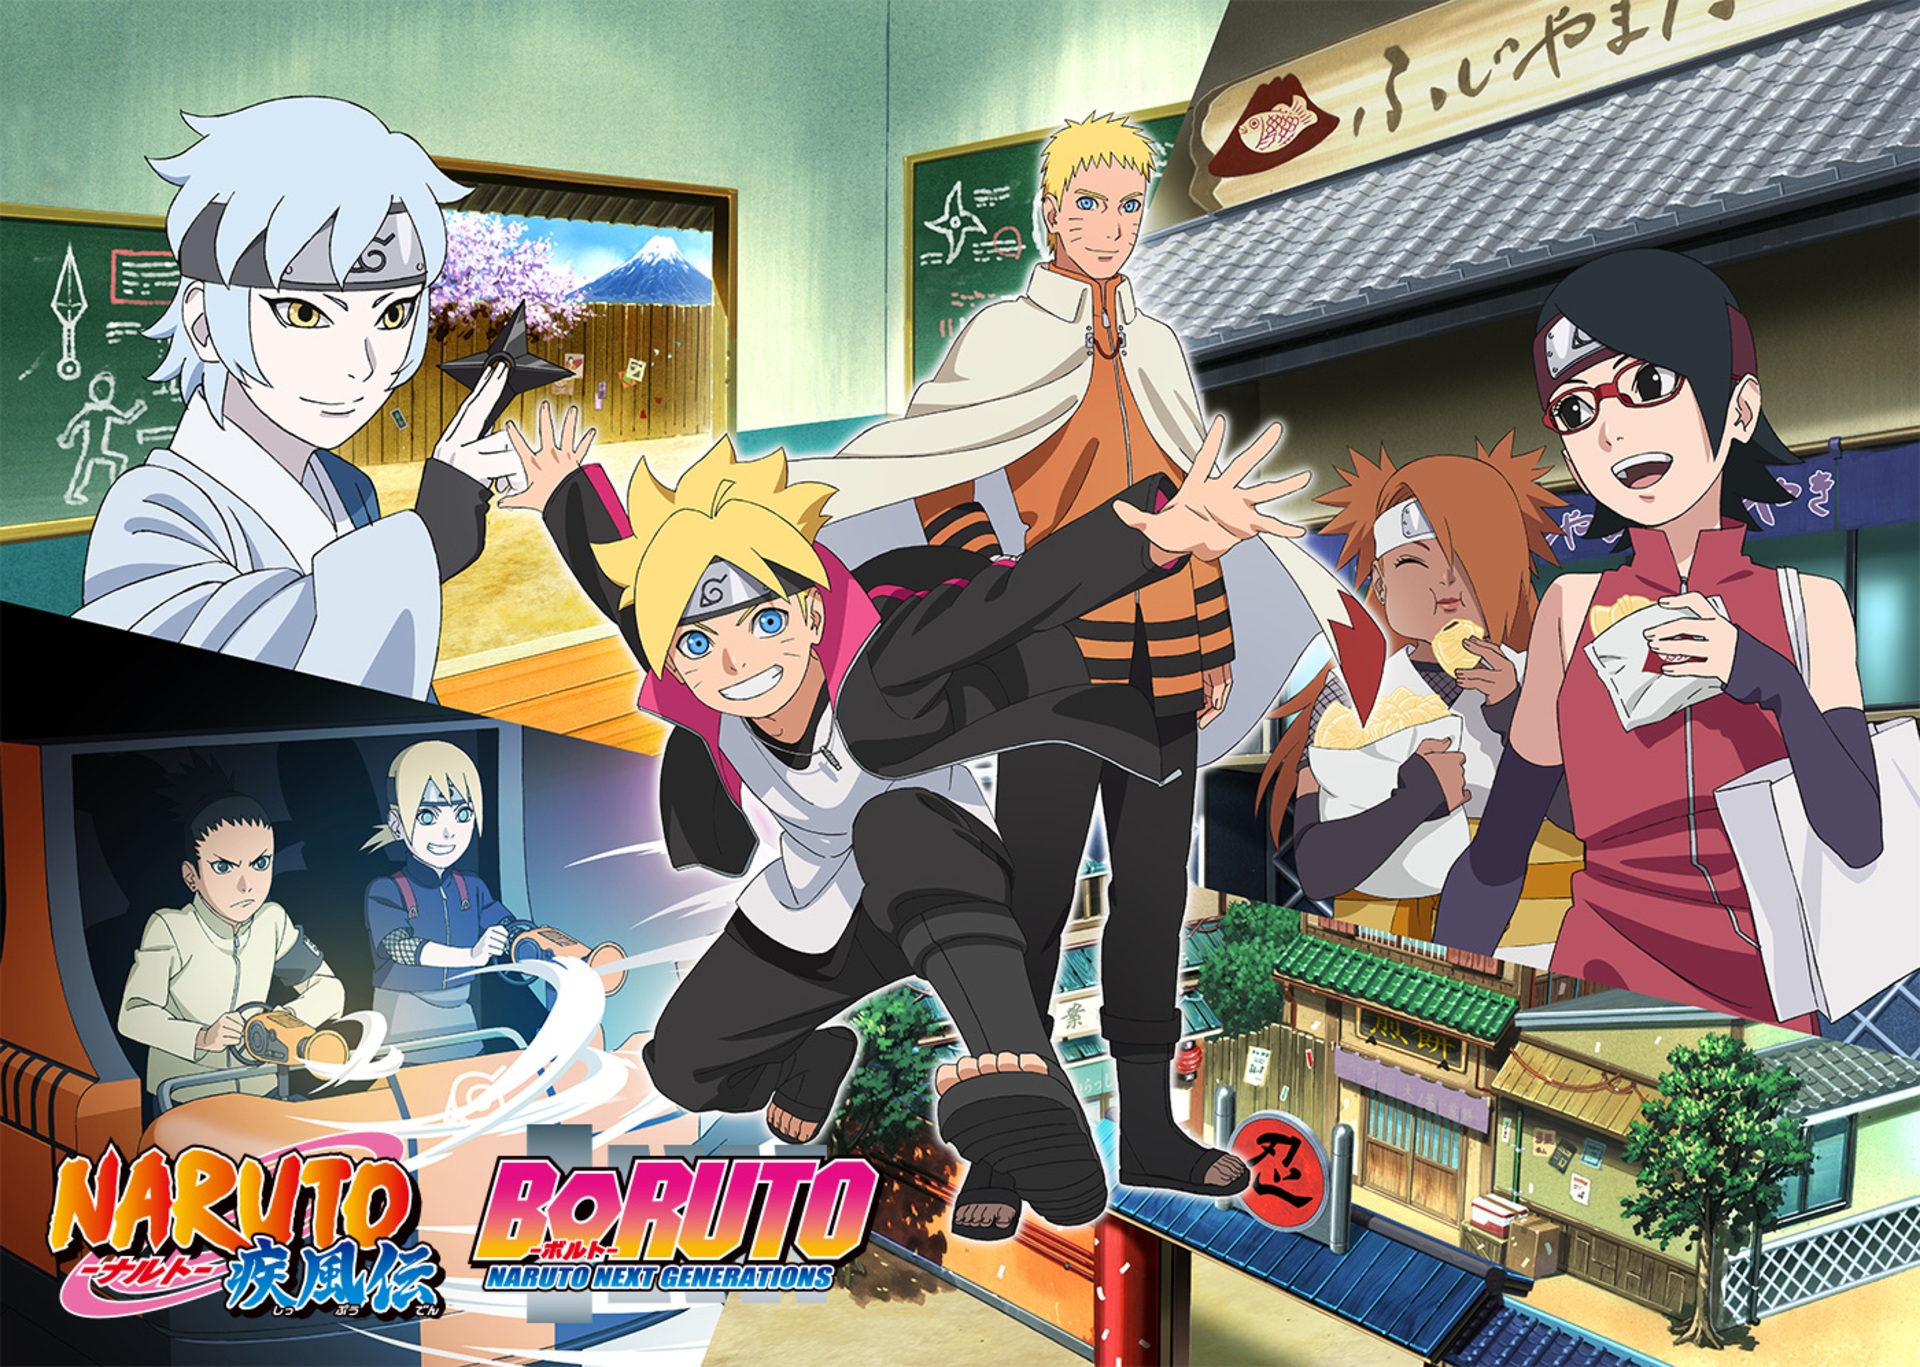 Descarga gratuita de fondo de pantalla para móvil de Naruto, Animado, Naruto Uzumaki, Sarada Uchiha, Boruto Uzumaki, Inojin Yamanaka, Mitsuki (Naruto), Boruto, Chōchō Akimichi, Shikadai Nara.